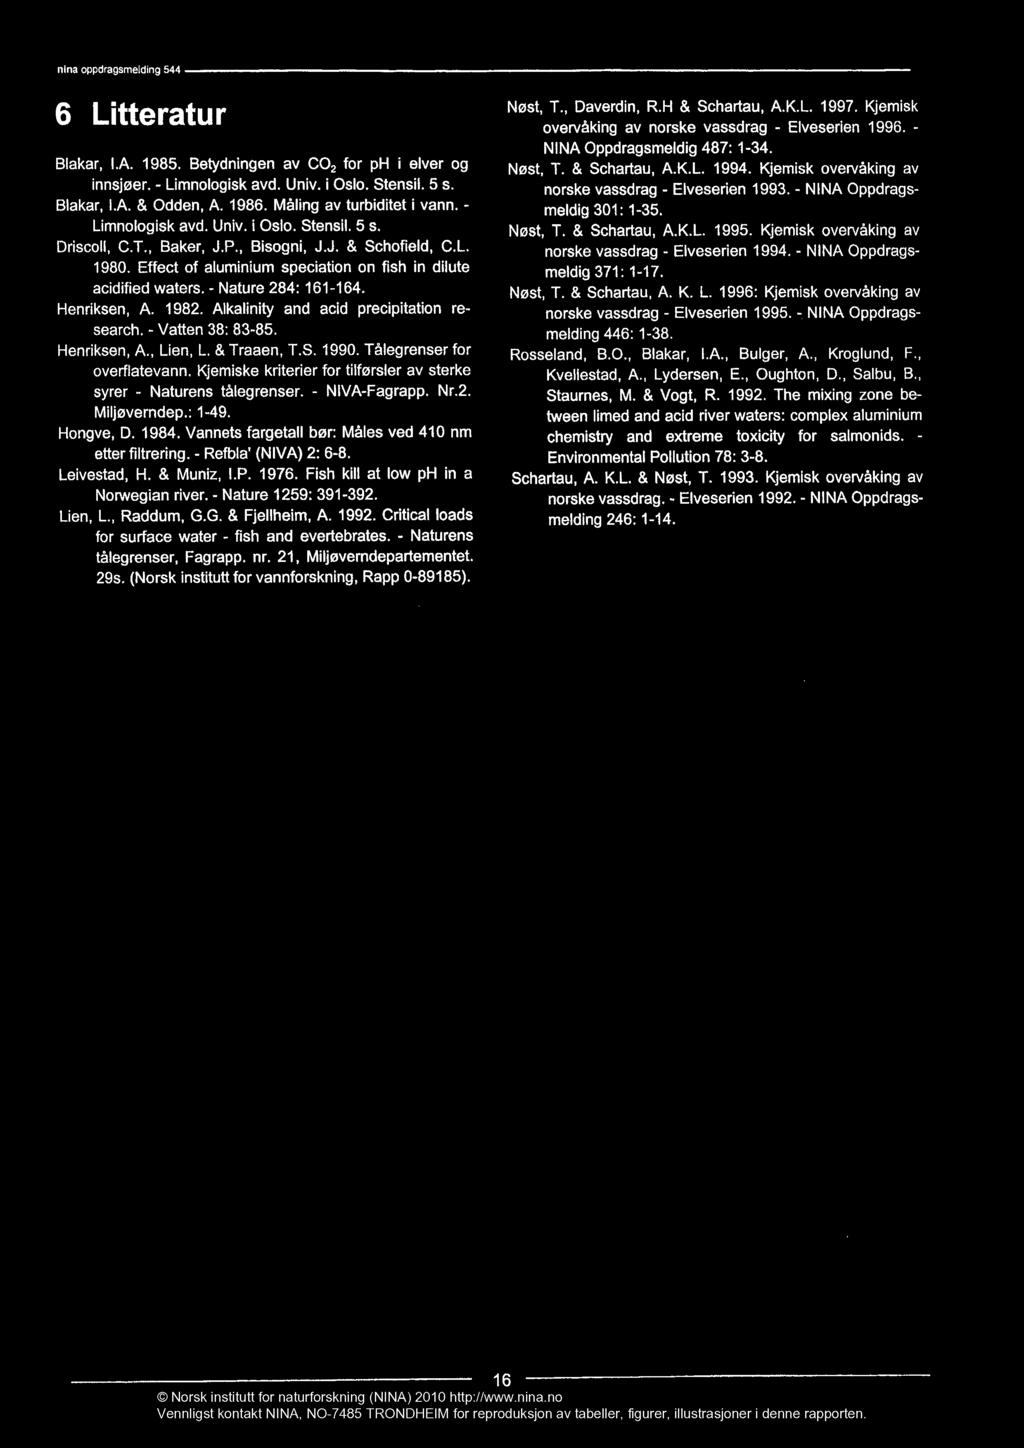 nina oppdragsmelding 544 6 Litteratur Blakar, I.A. 1985. Betydningen av CO2 for ph i elver og innsjøer. - Limnologisk avd. Univ. i Oslo. Stensil. 5 s. Blakar, LA. & Odden, A. 1986.